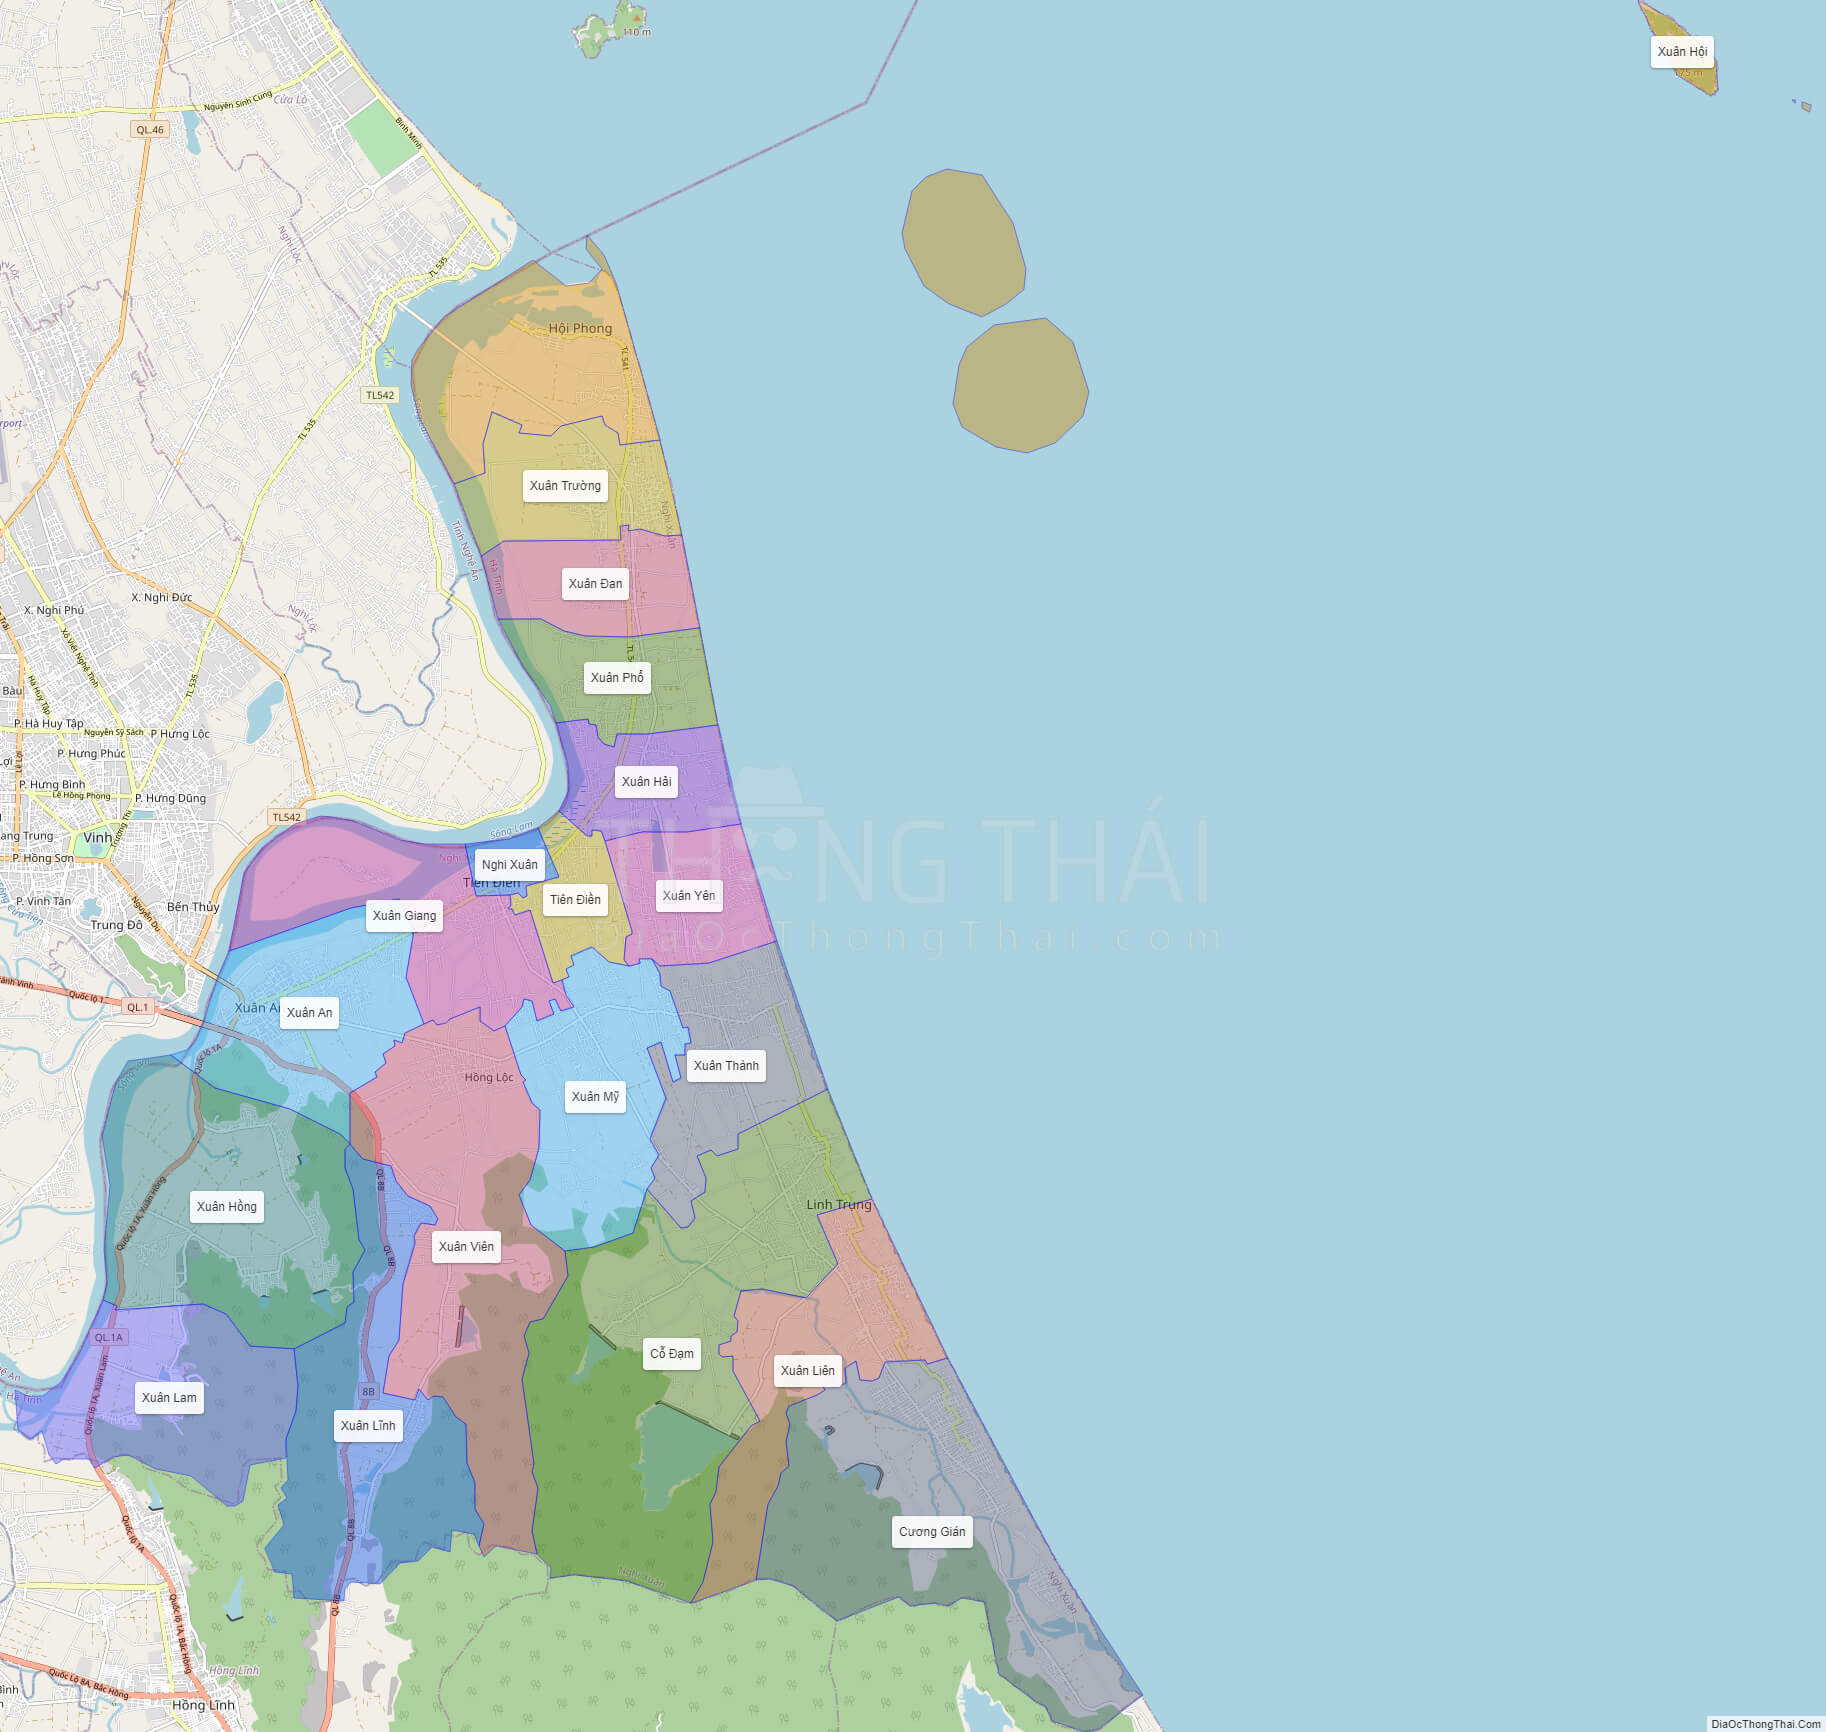 Bản đồ huyện Nghi Xuân Hà Tĩnh 2024 sẽ giúp bạn có cái nhìn tổng quan về đơn vị hành chính cấp huyện này. Nghi Xuân đang phát triển mạnh mẽ, với nhiều dự án lớn sắp triển khai. Khám phá bản đồ này để tìm hiểu thêm về tiềm năng kinh tế và đầu tư của huyện này.